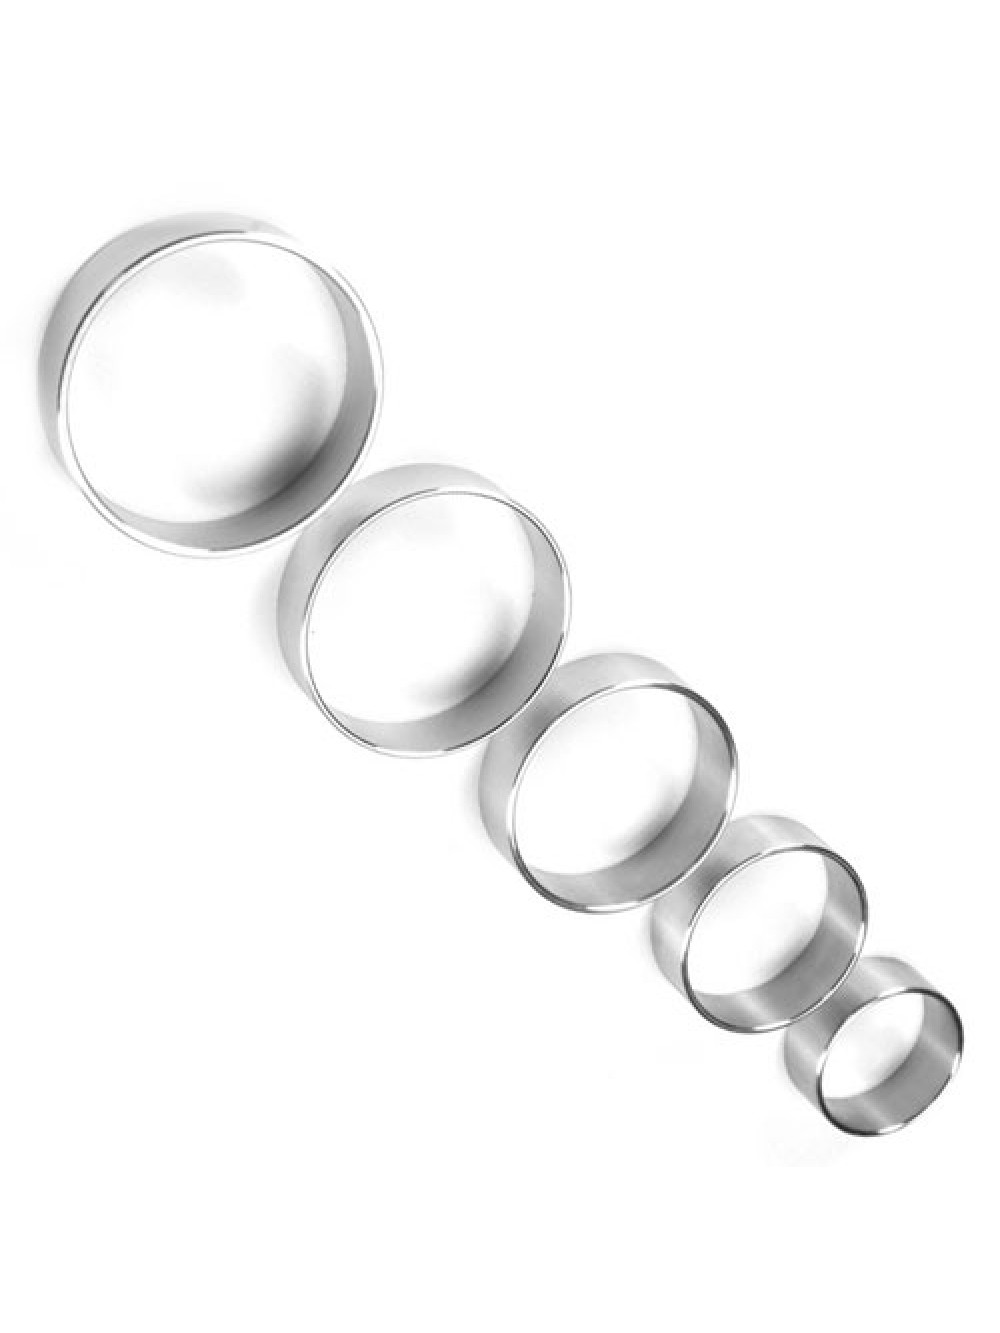 Sottile di metallo 1,5 pollici di diametro largo Cock Ring